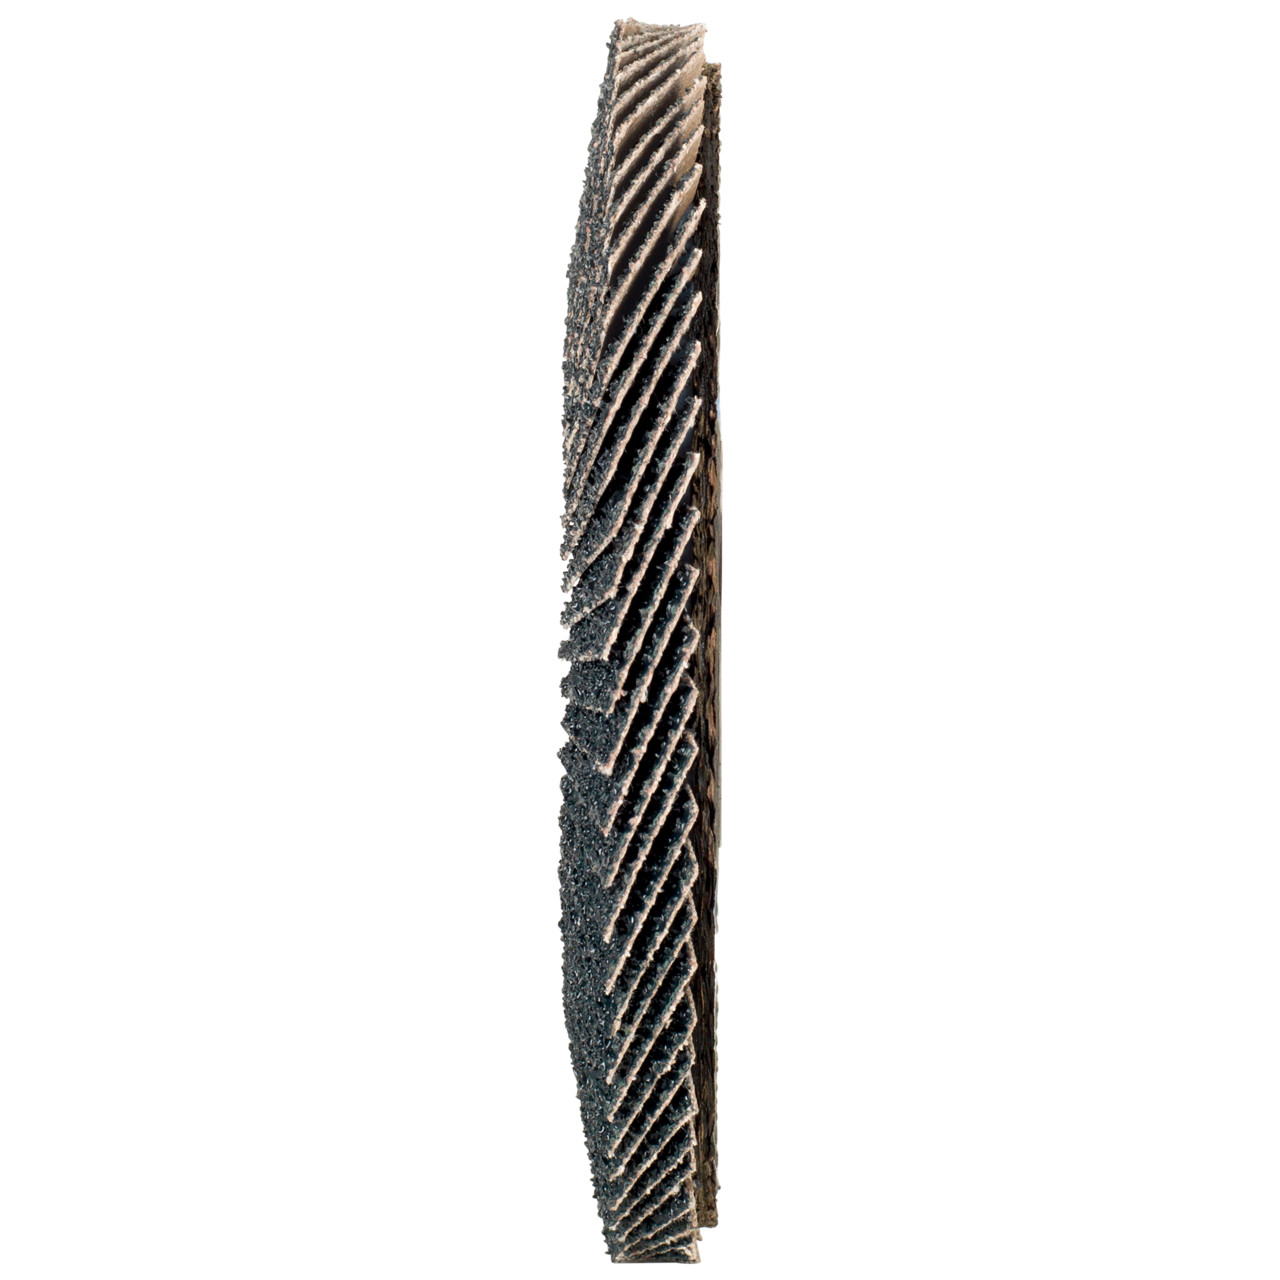 Rondella dentata Tyrolit DxH 115x22.2 2in1 per acciaio e acciaio inox, P60, forma: 28A - versione diritto (versione con corpo portante in fibra di vetro), Art. 668687